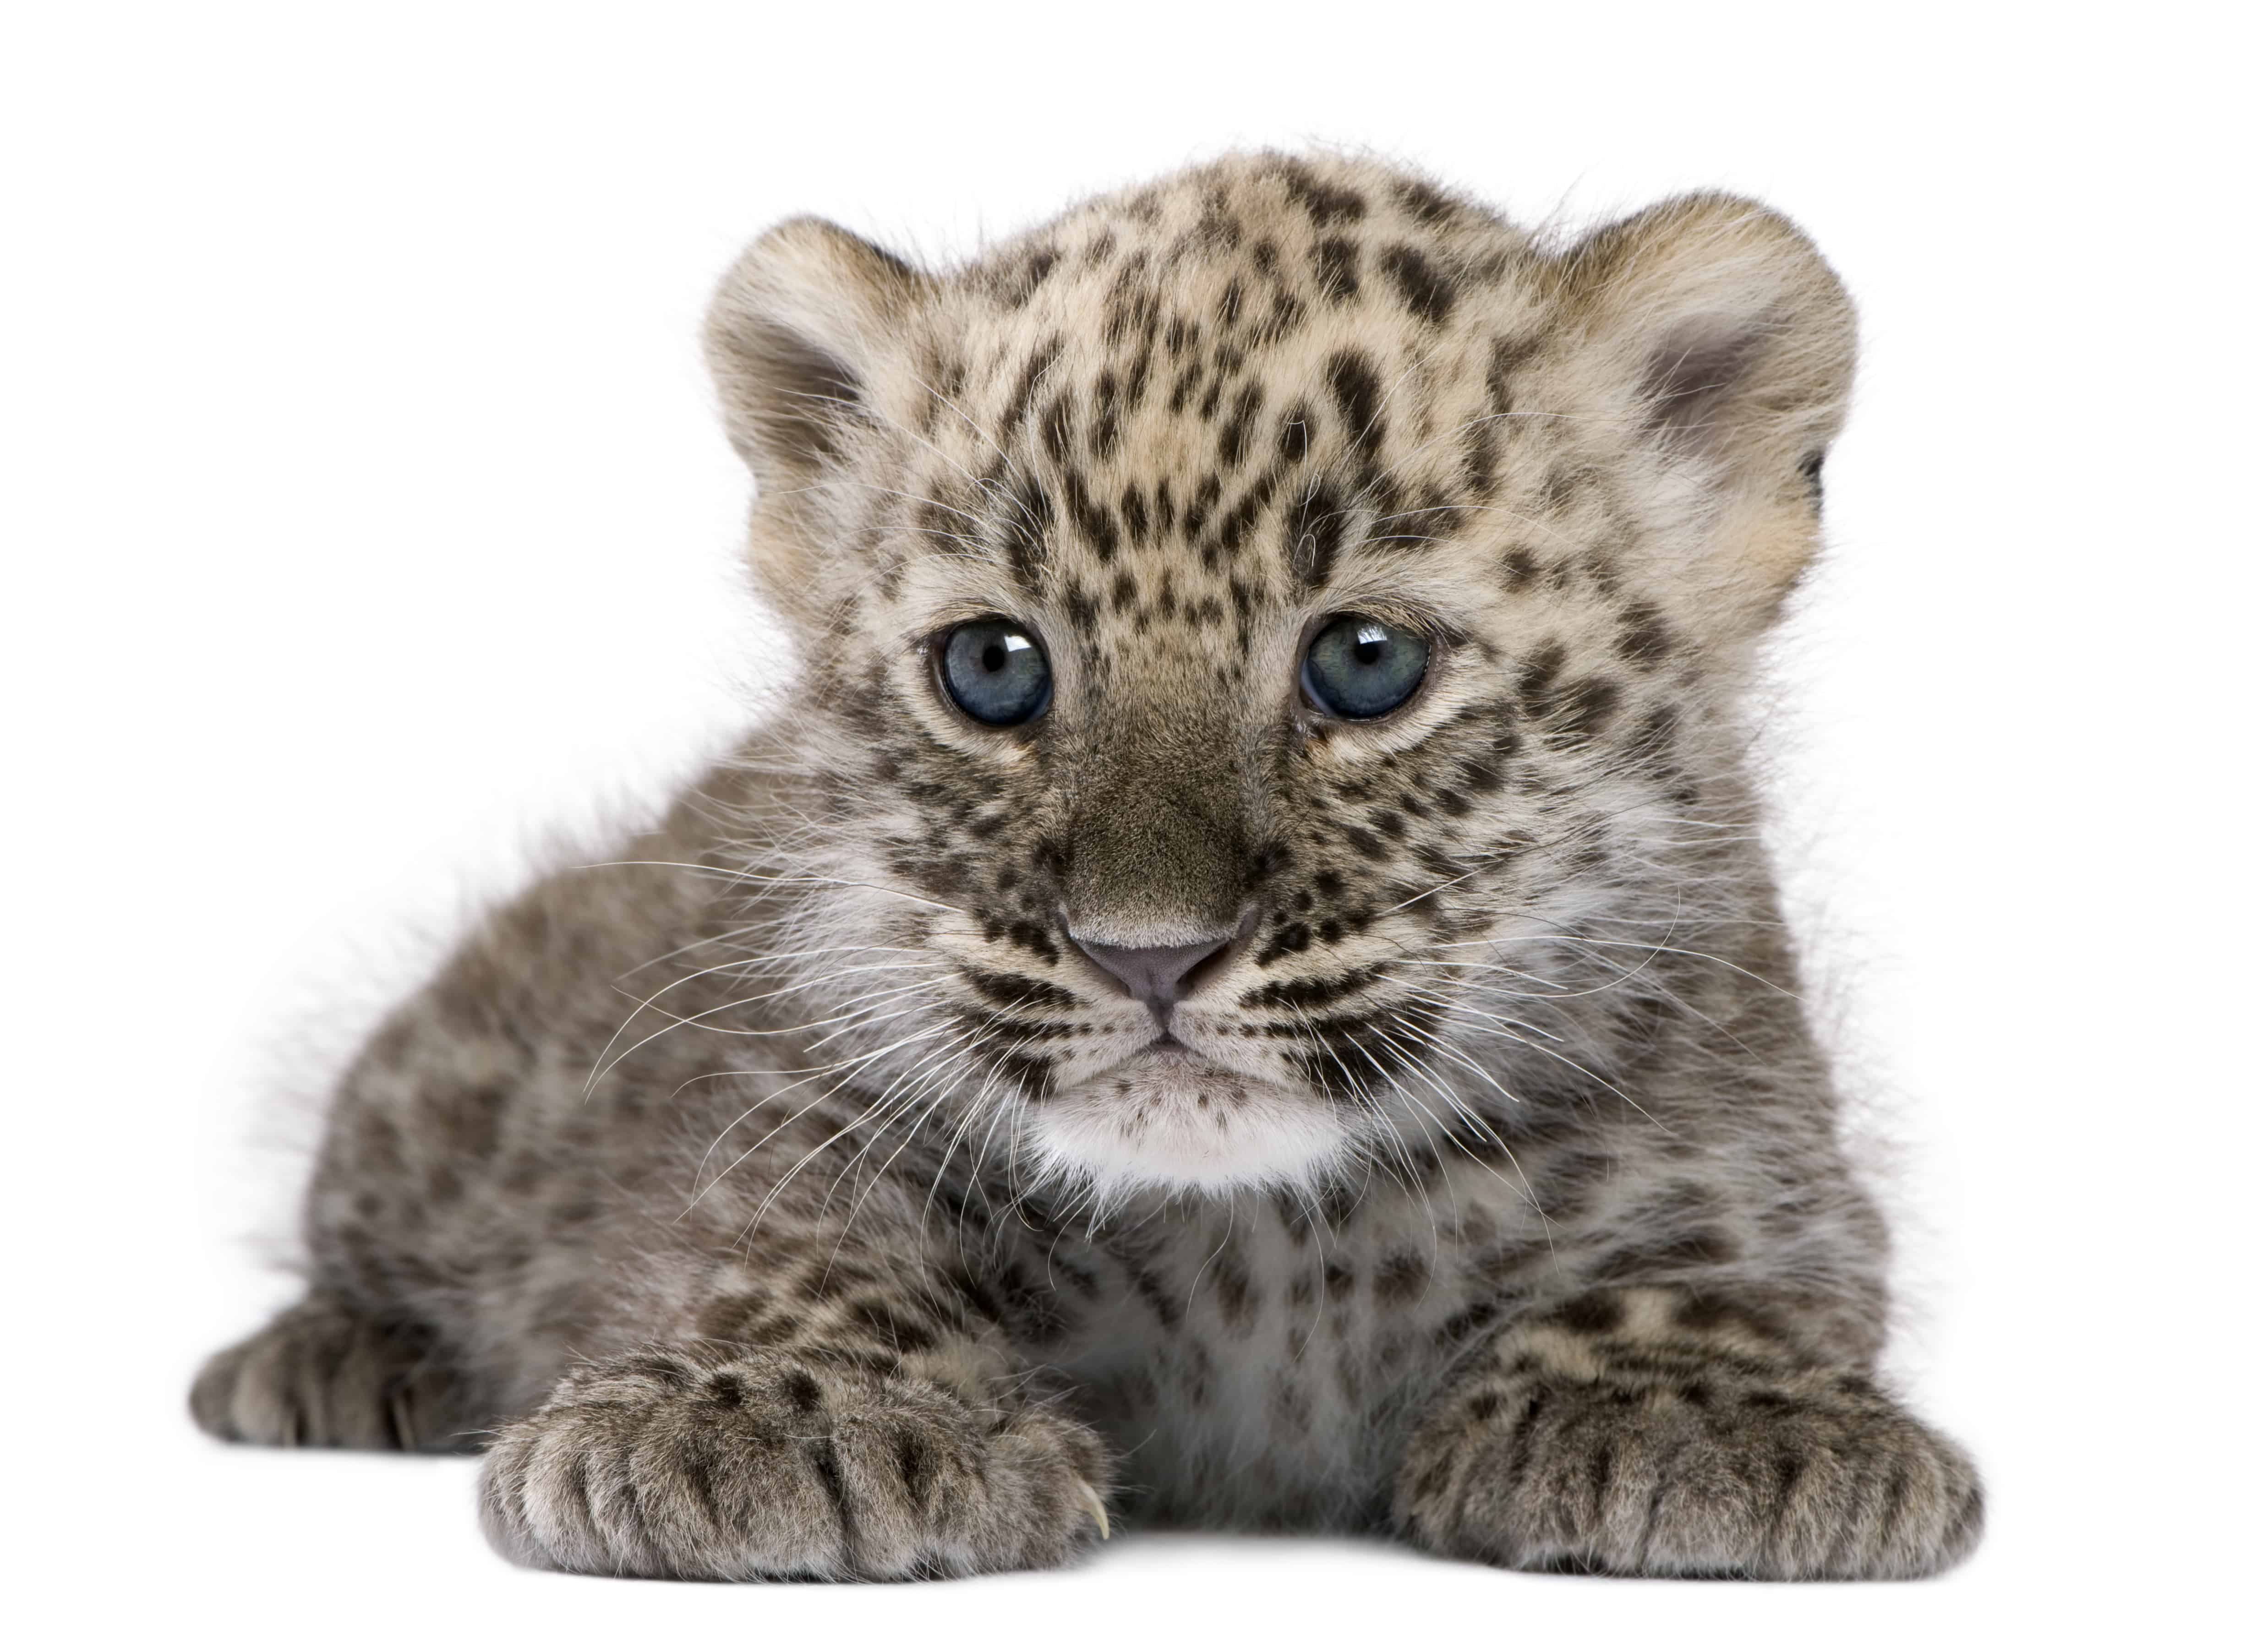 Instrueren Stadium parlement 8 Facts About Baby Leopards - AZ Animals